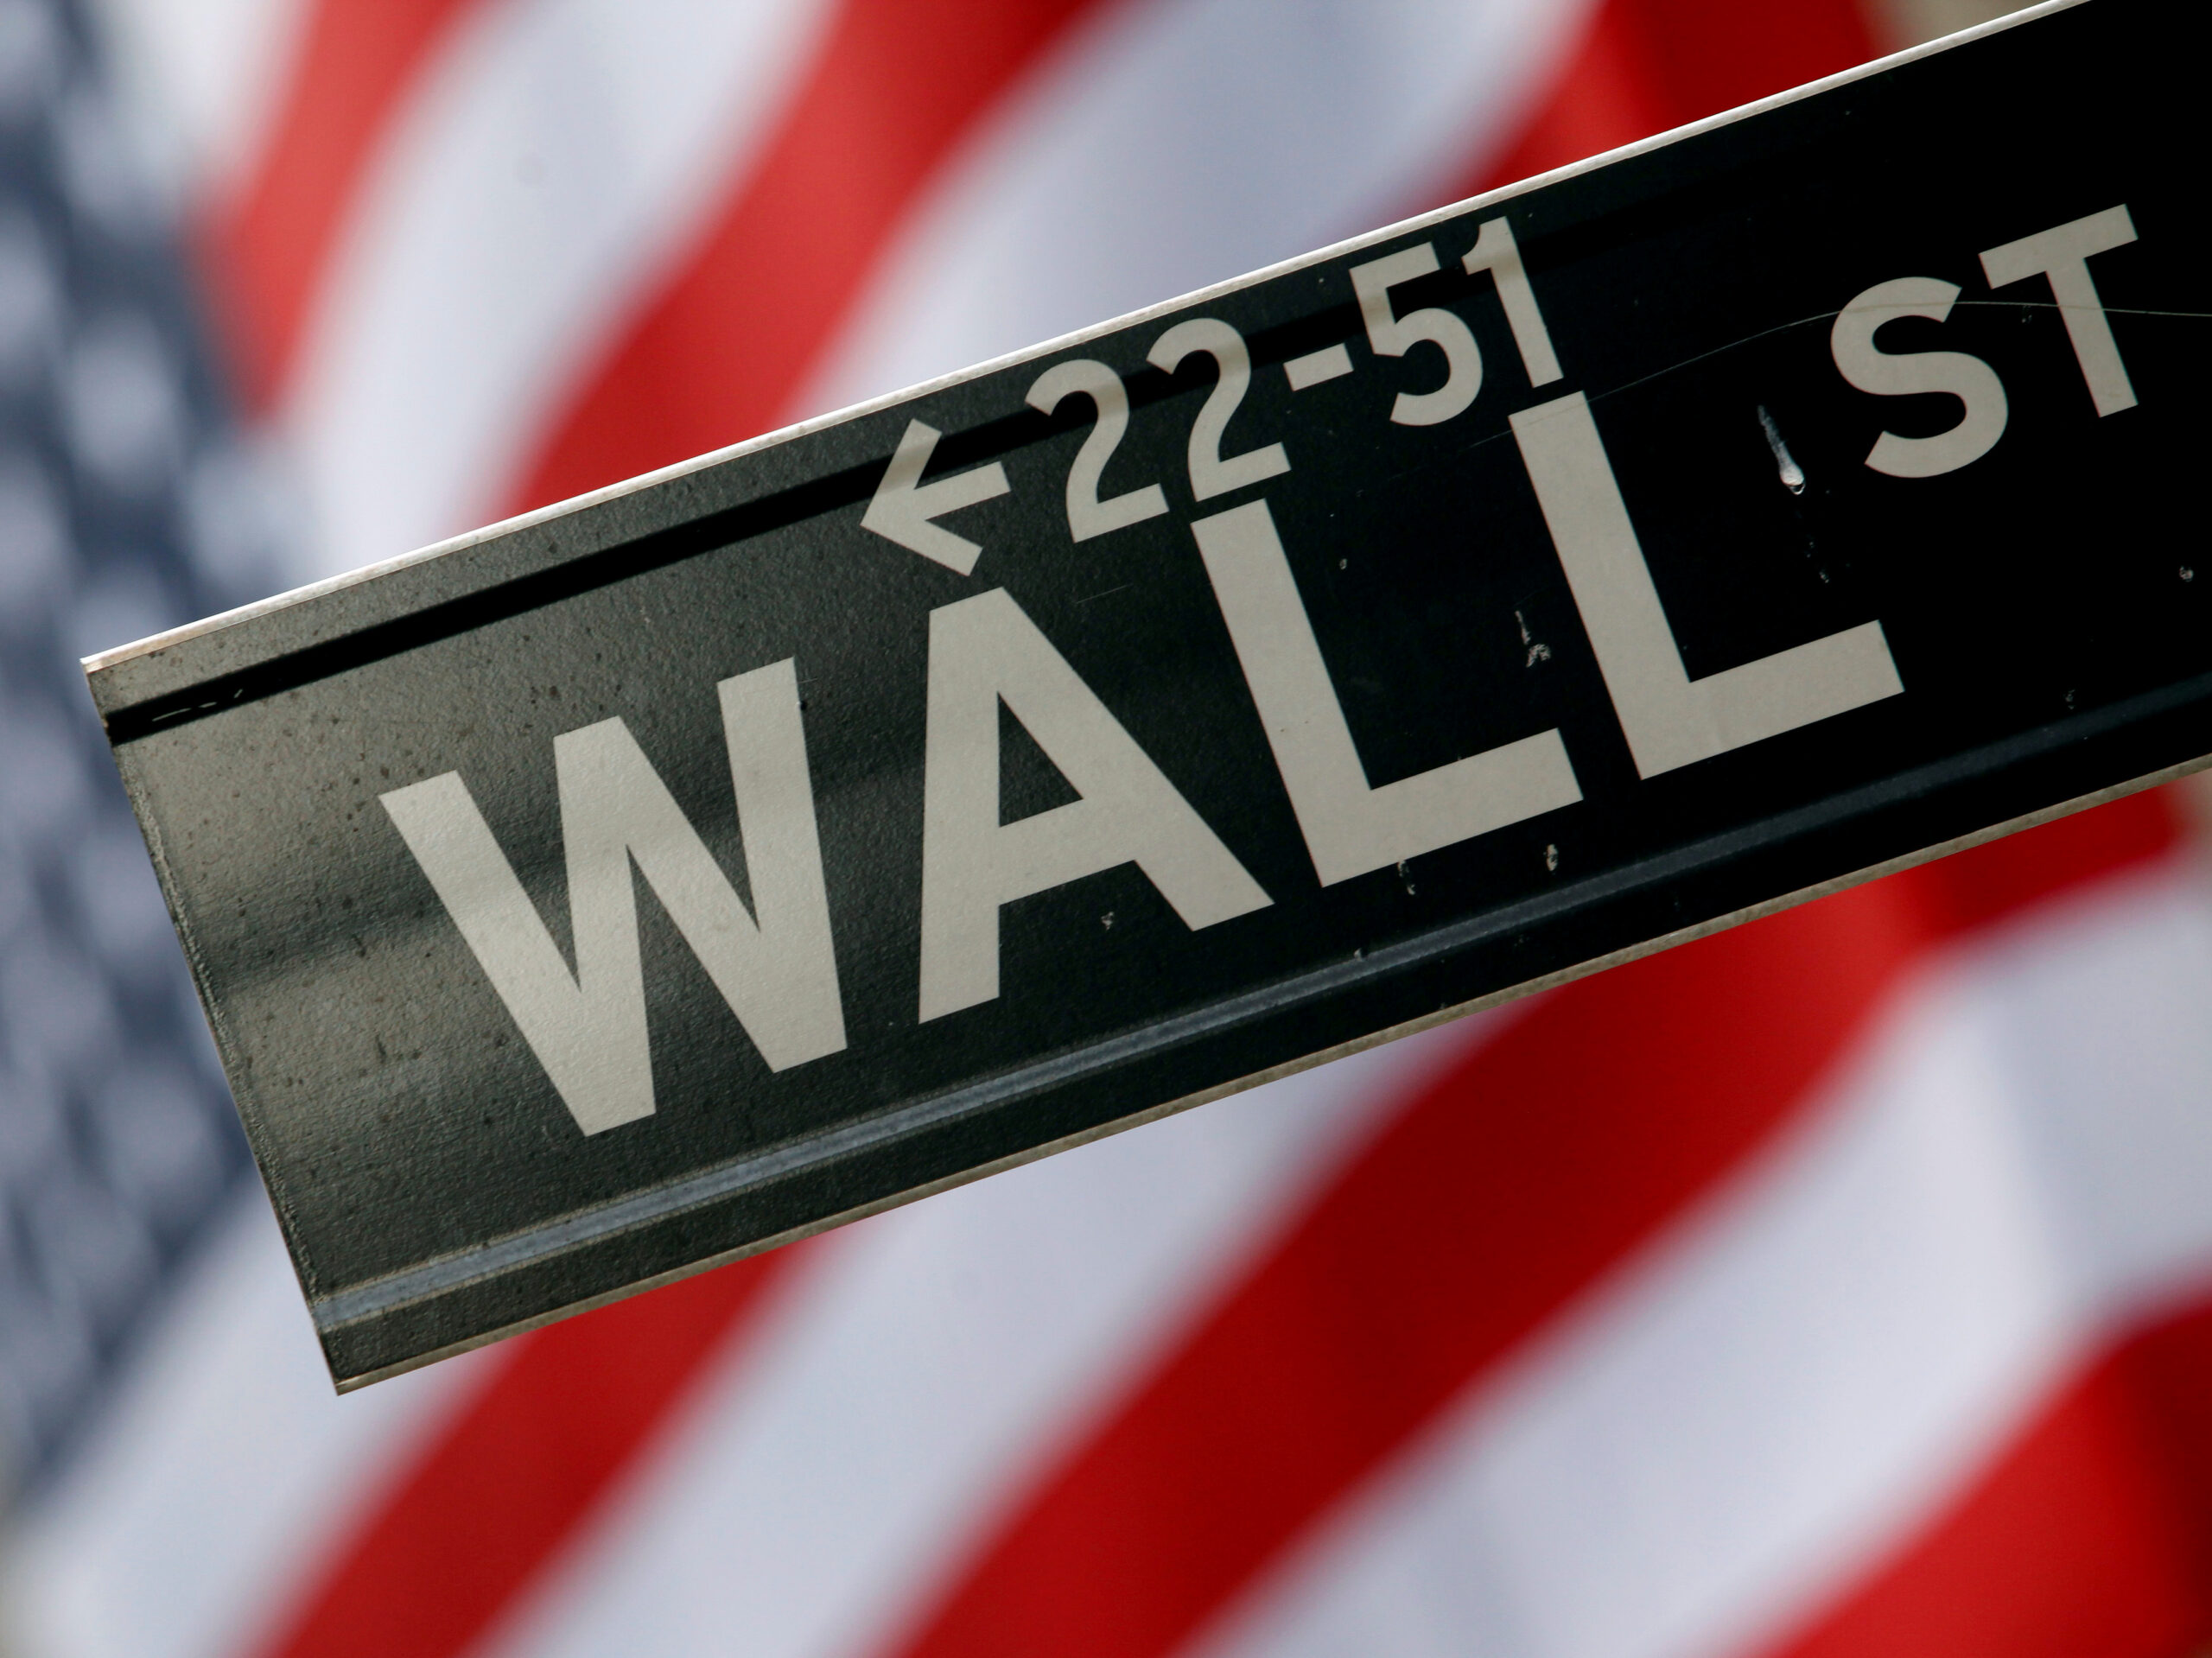 Mercados Globales en caída, las acciones estadounidenses apuntan a perdidas. Claves para Wall Street